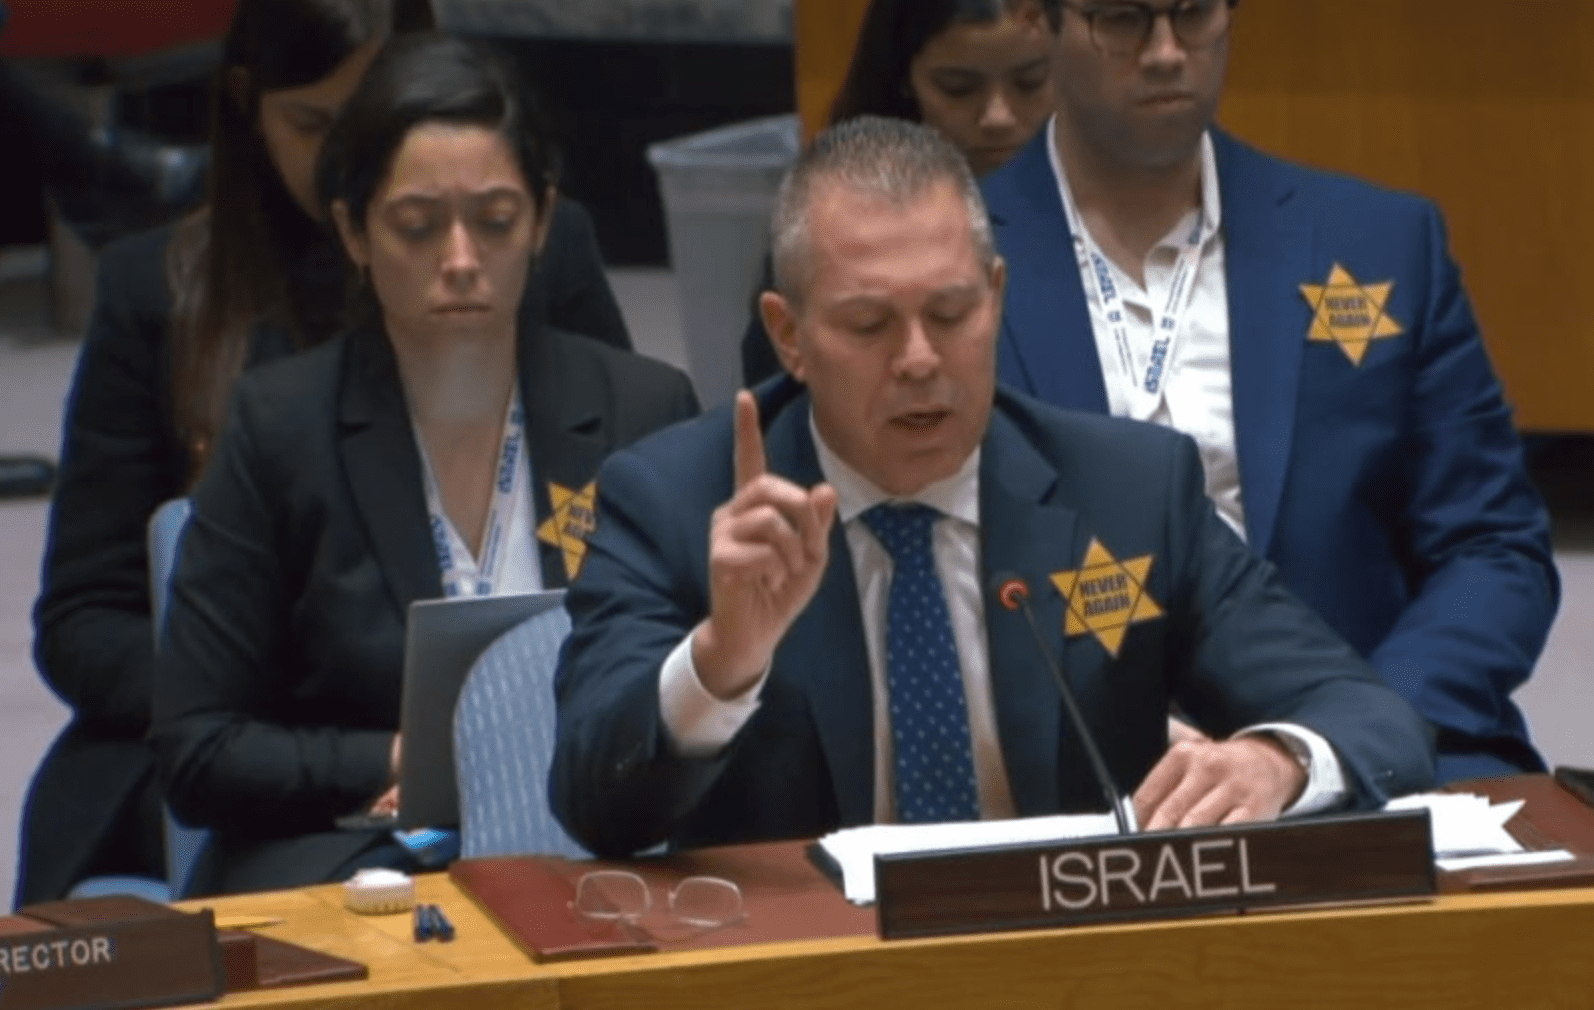 Onu, la delegazione israeliana con una stella gialla e la scritta 'mai più'